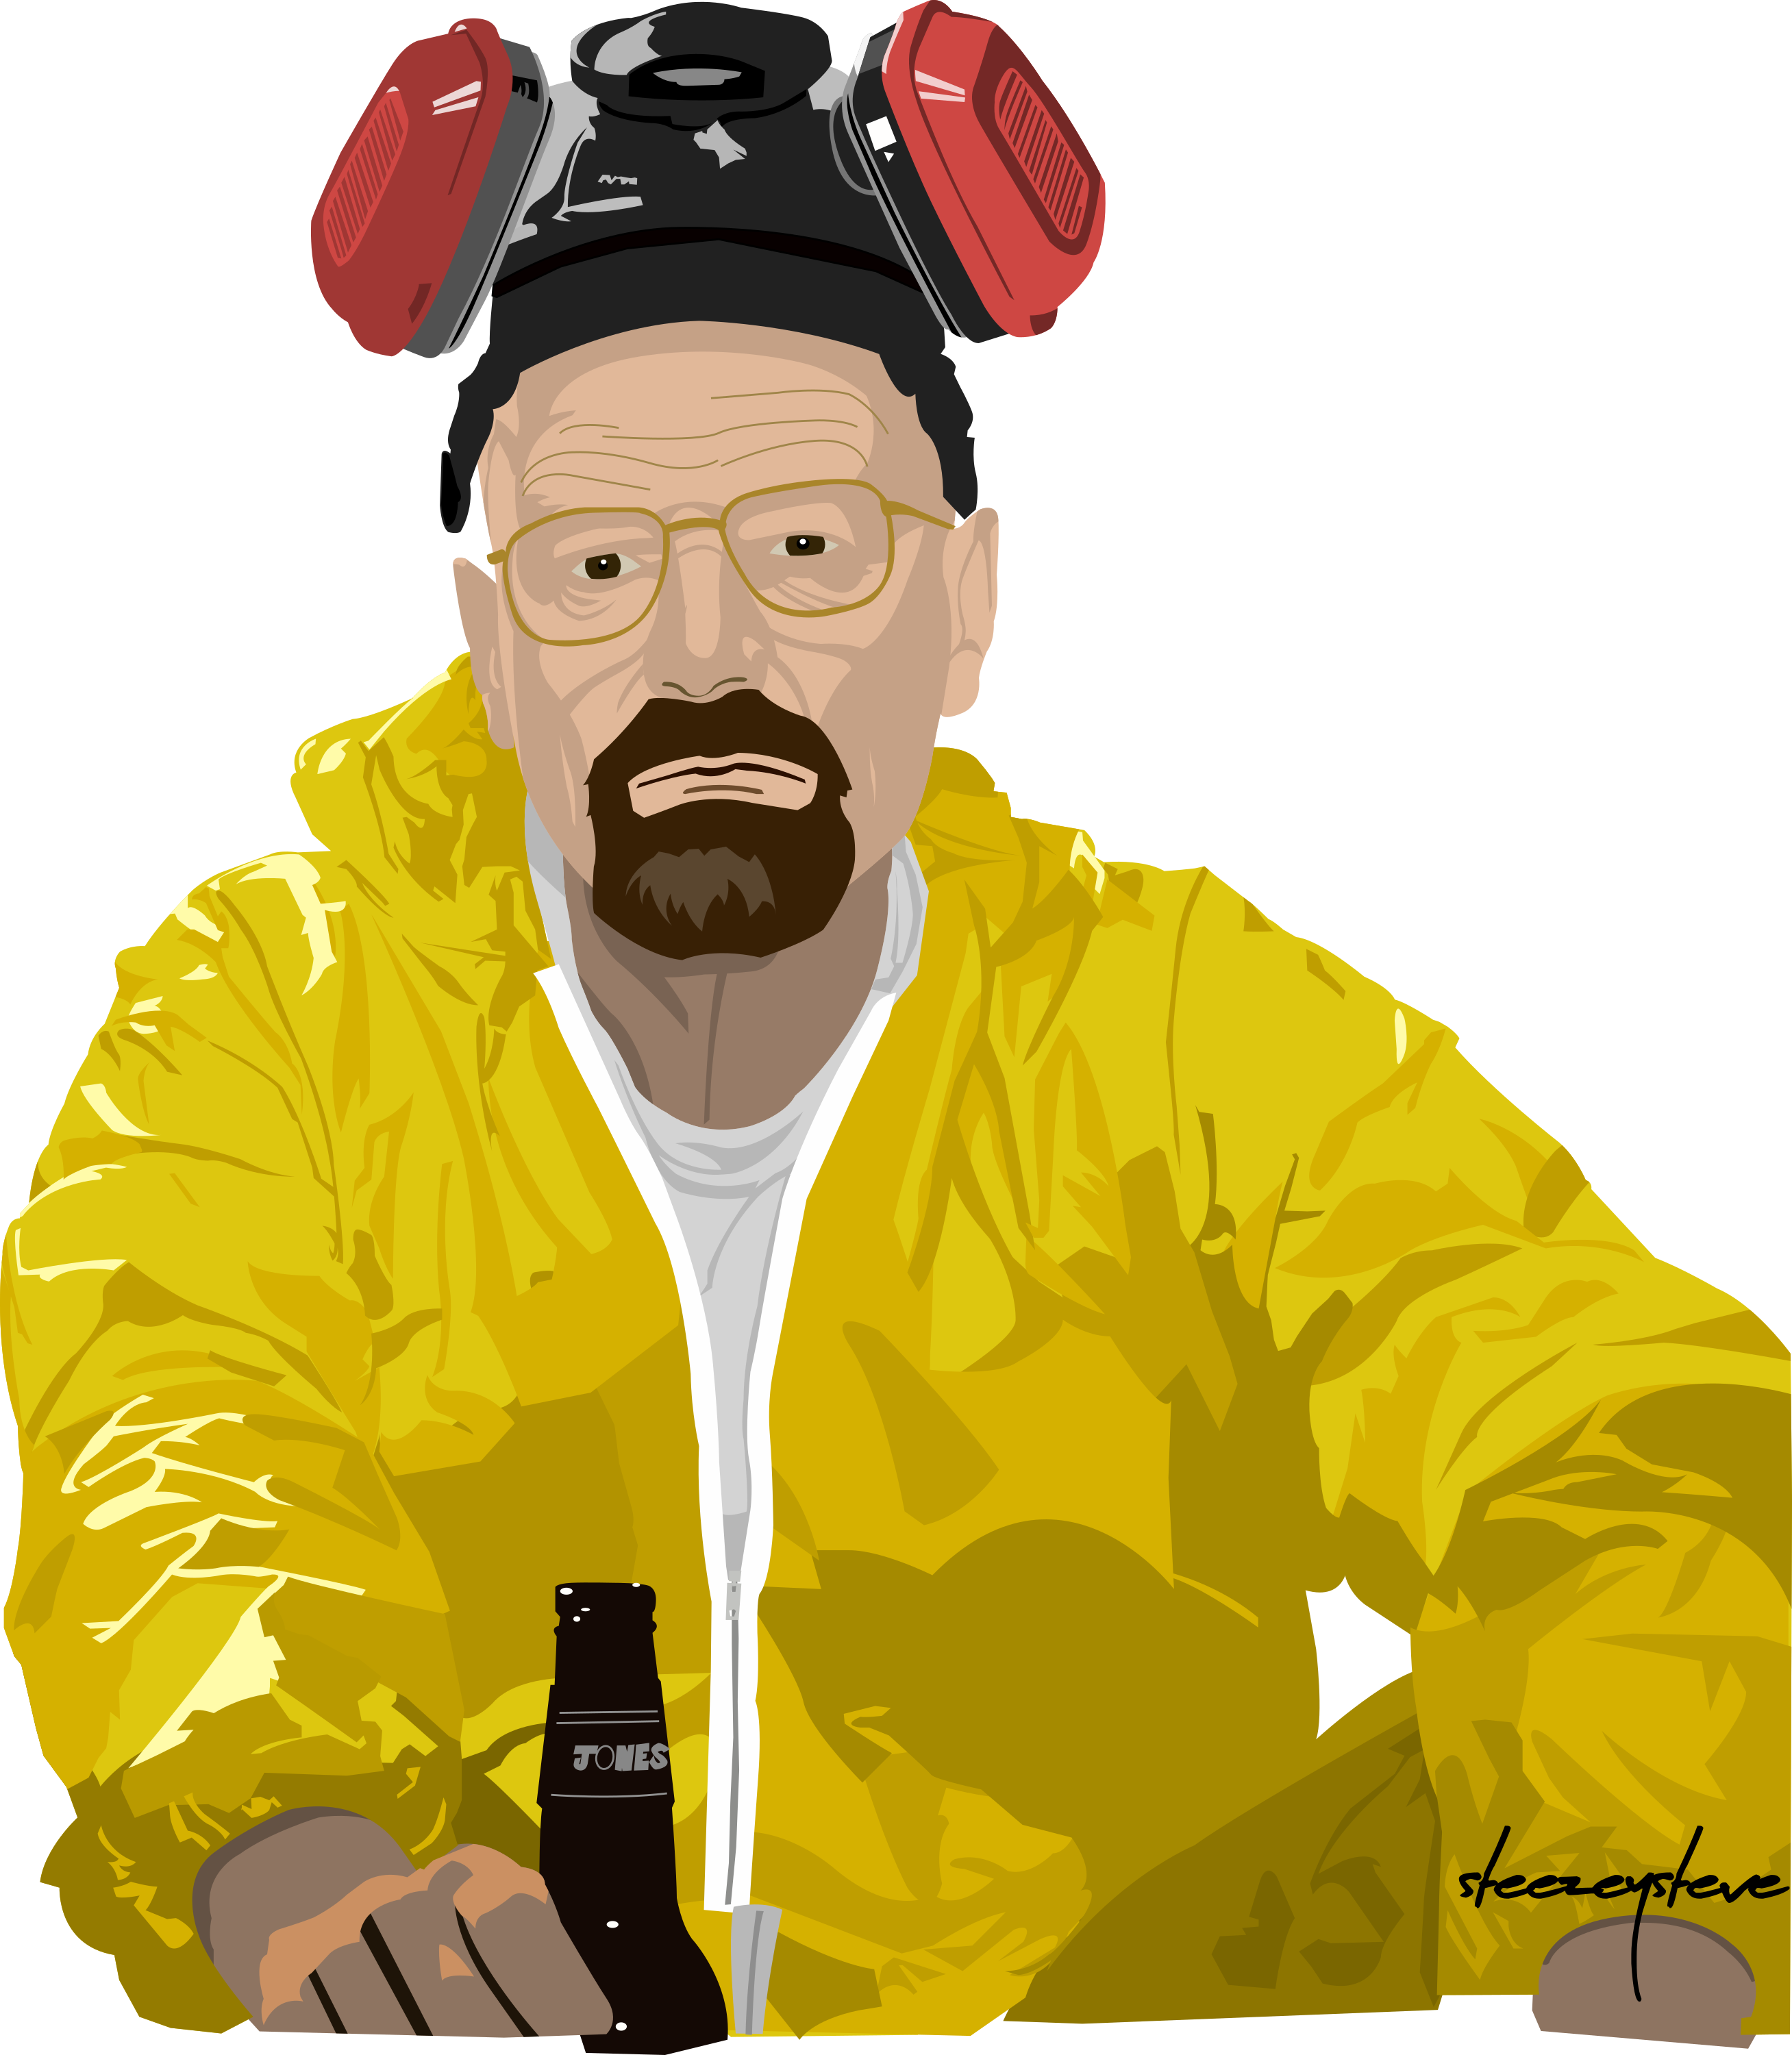 [oc] Heisenberg - Illustration (2616x3000), Png Download